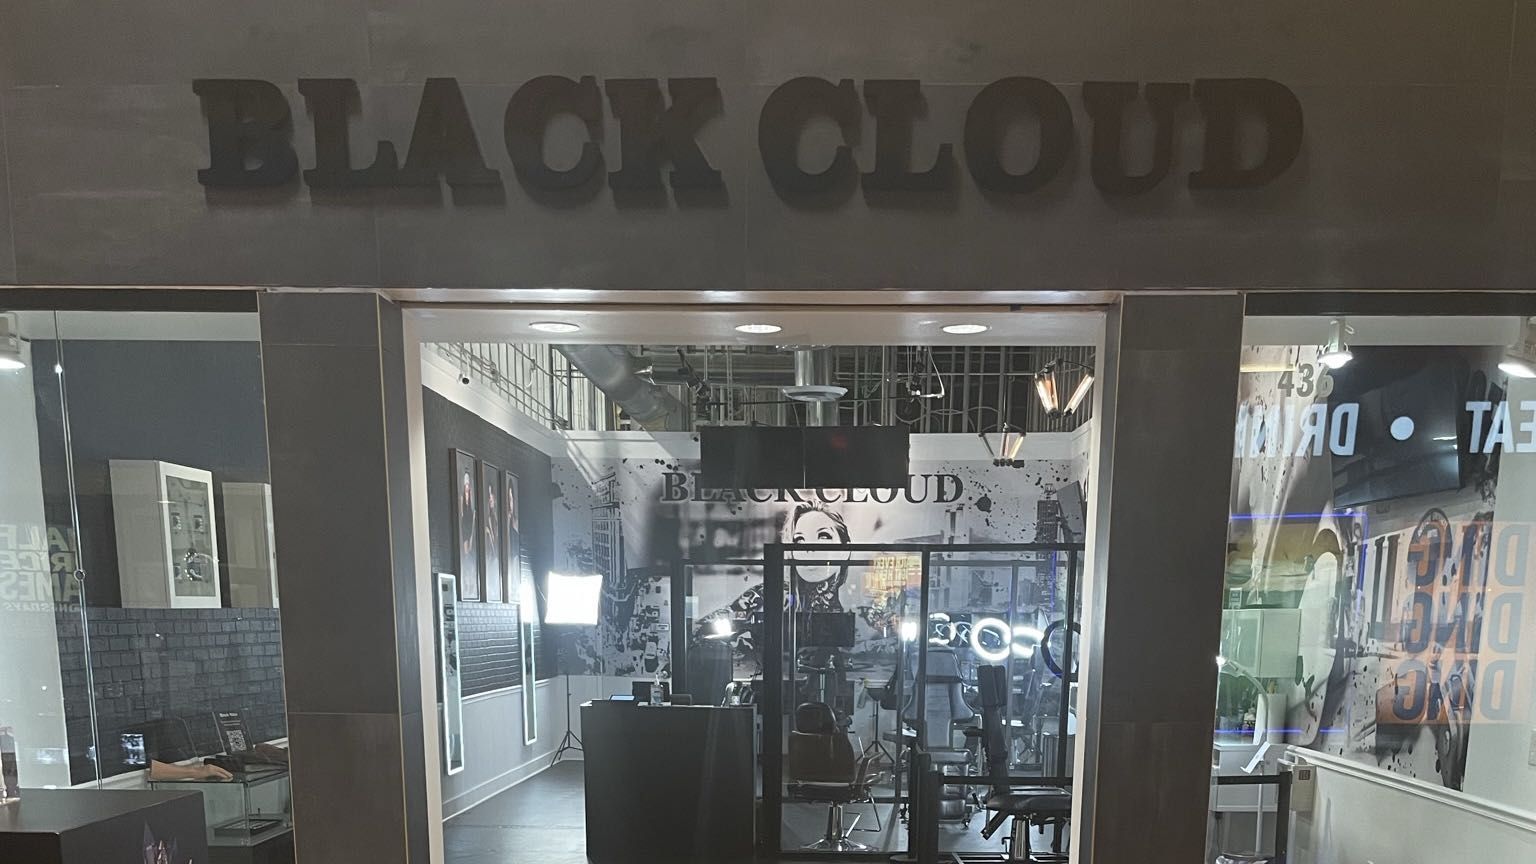 Black Cloud Sugarloaf Mills Mall Lawrenceville Ga Real Ink Fort Wayne In Lawrenceville 